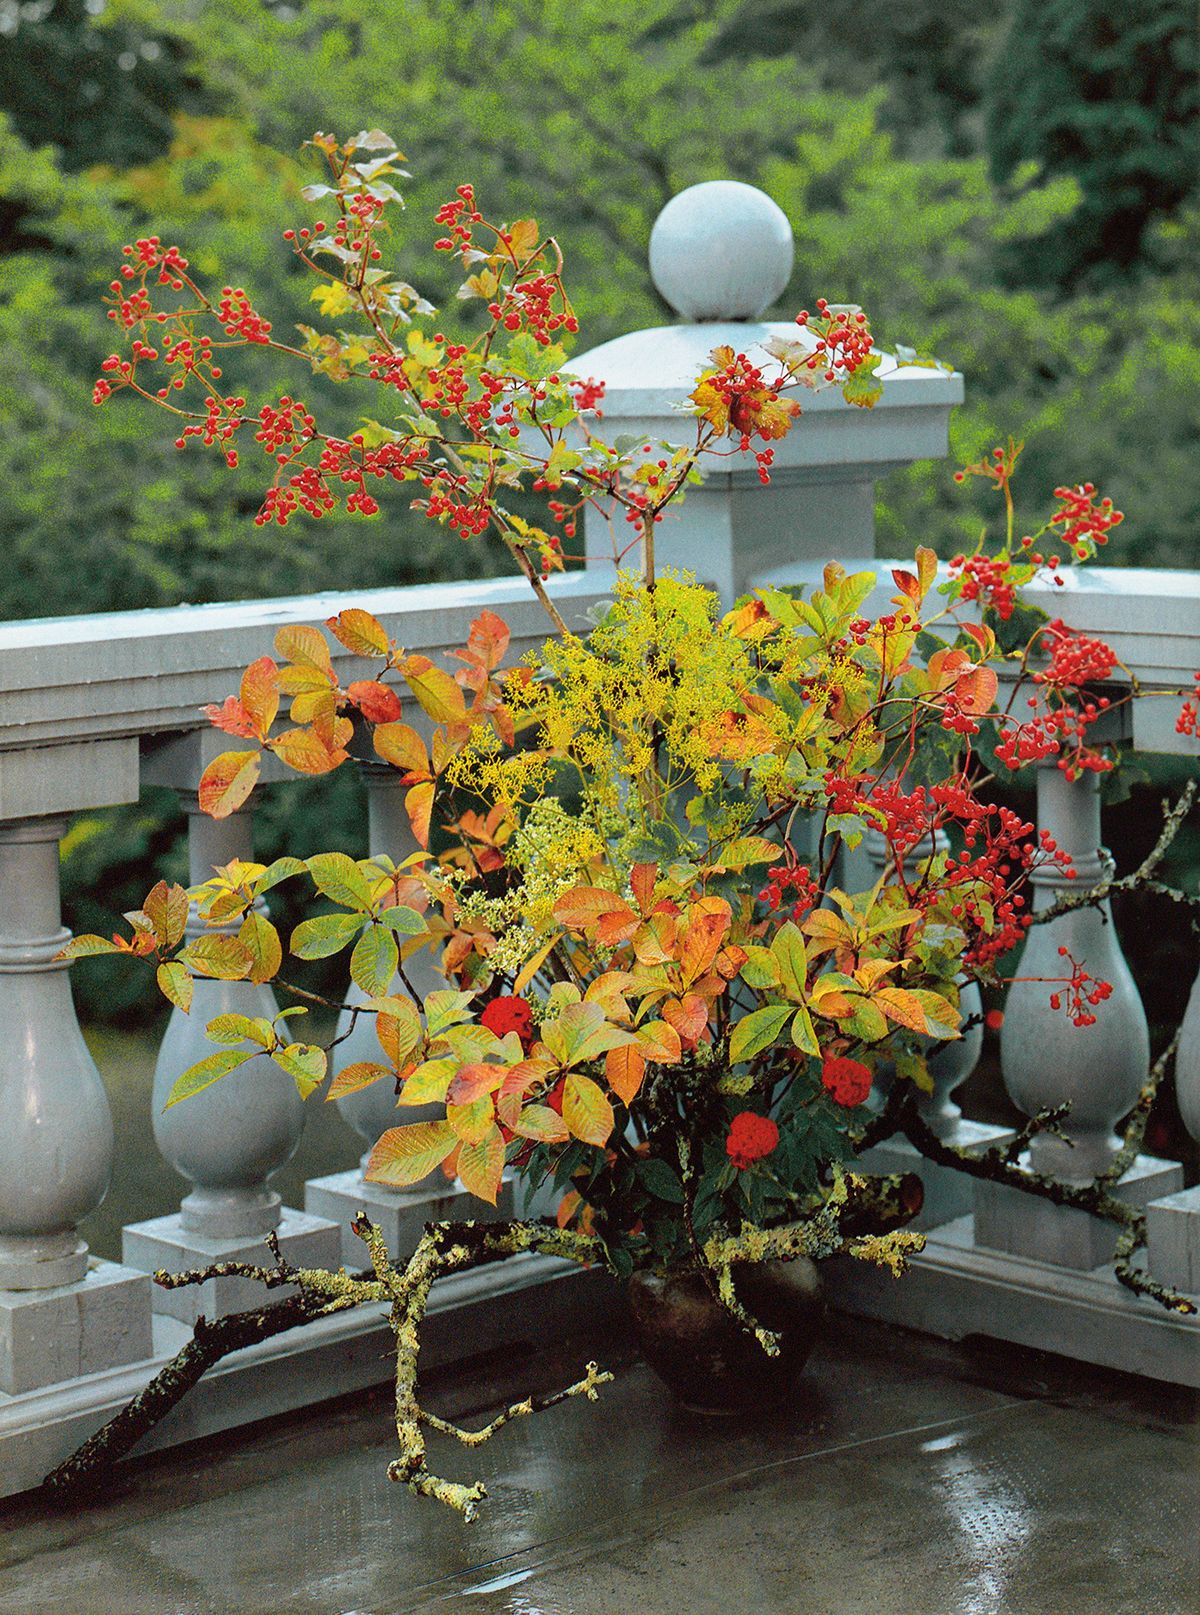 9月 家元のいけばな 旧有栖川宮別邸《天鏡閣》に「秋の彩り」をいける